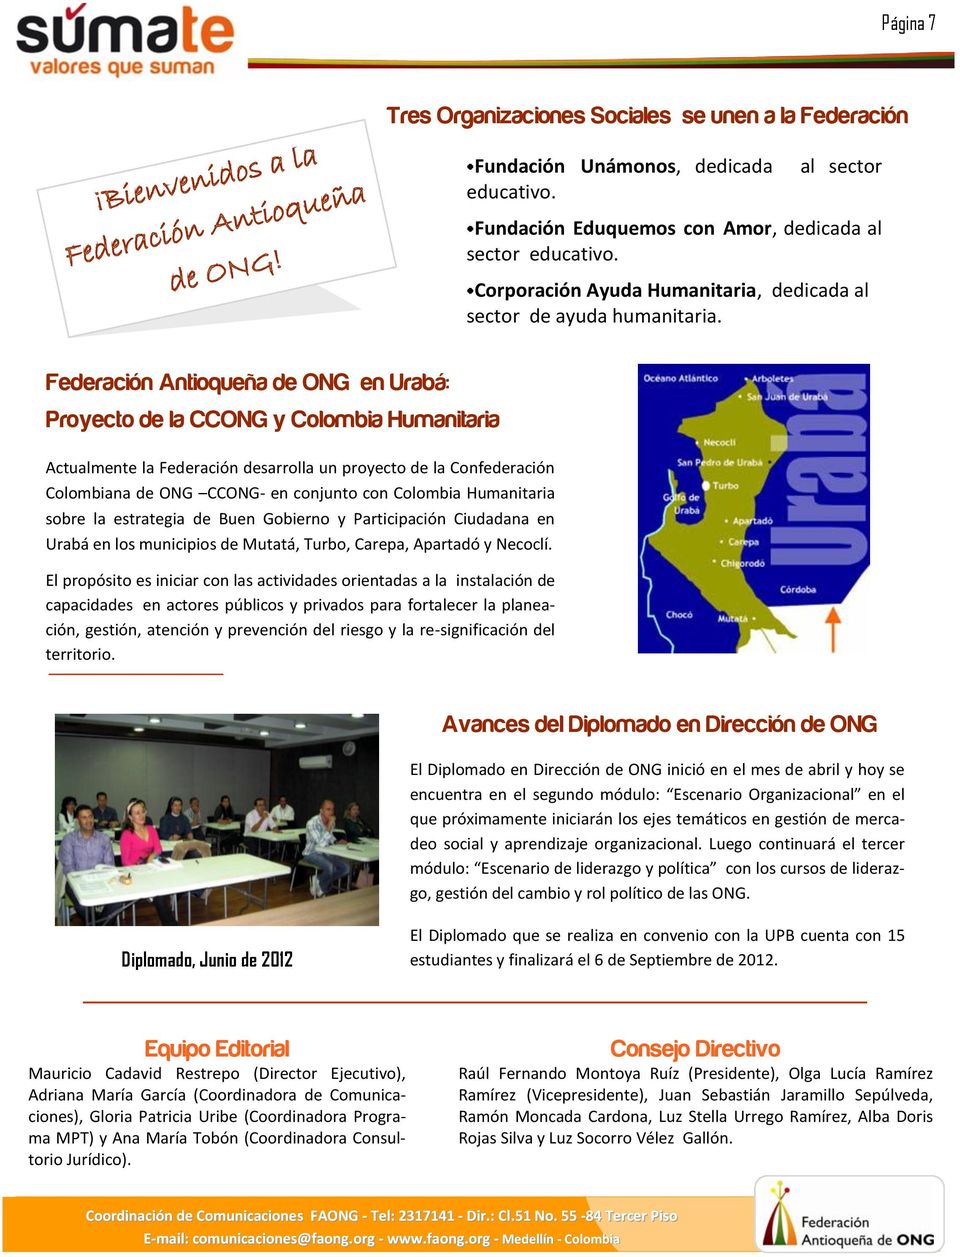 Federación Antioqueña de ONG en Urabá: Proyecto de la CCONG y Colombia Humanitaria Actualmente la Federación desarrolla un proyecto de la Confederación Colombiana de ONG CCONG- en conjunto con